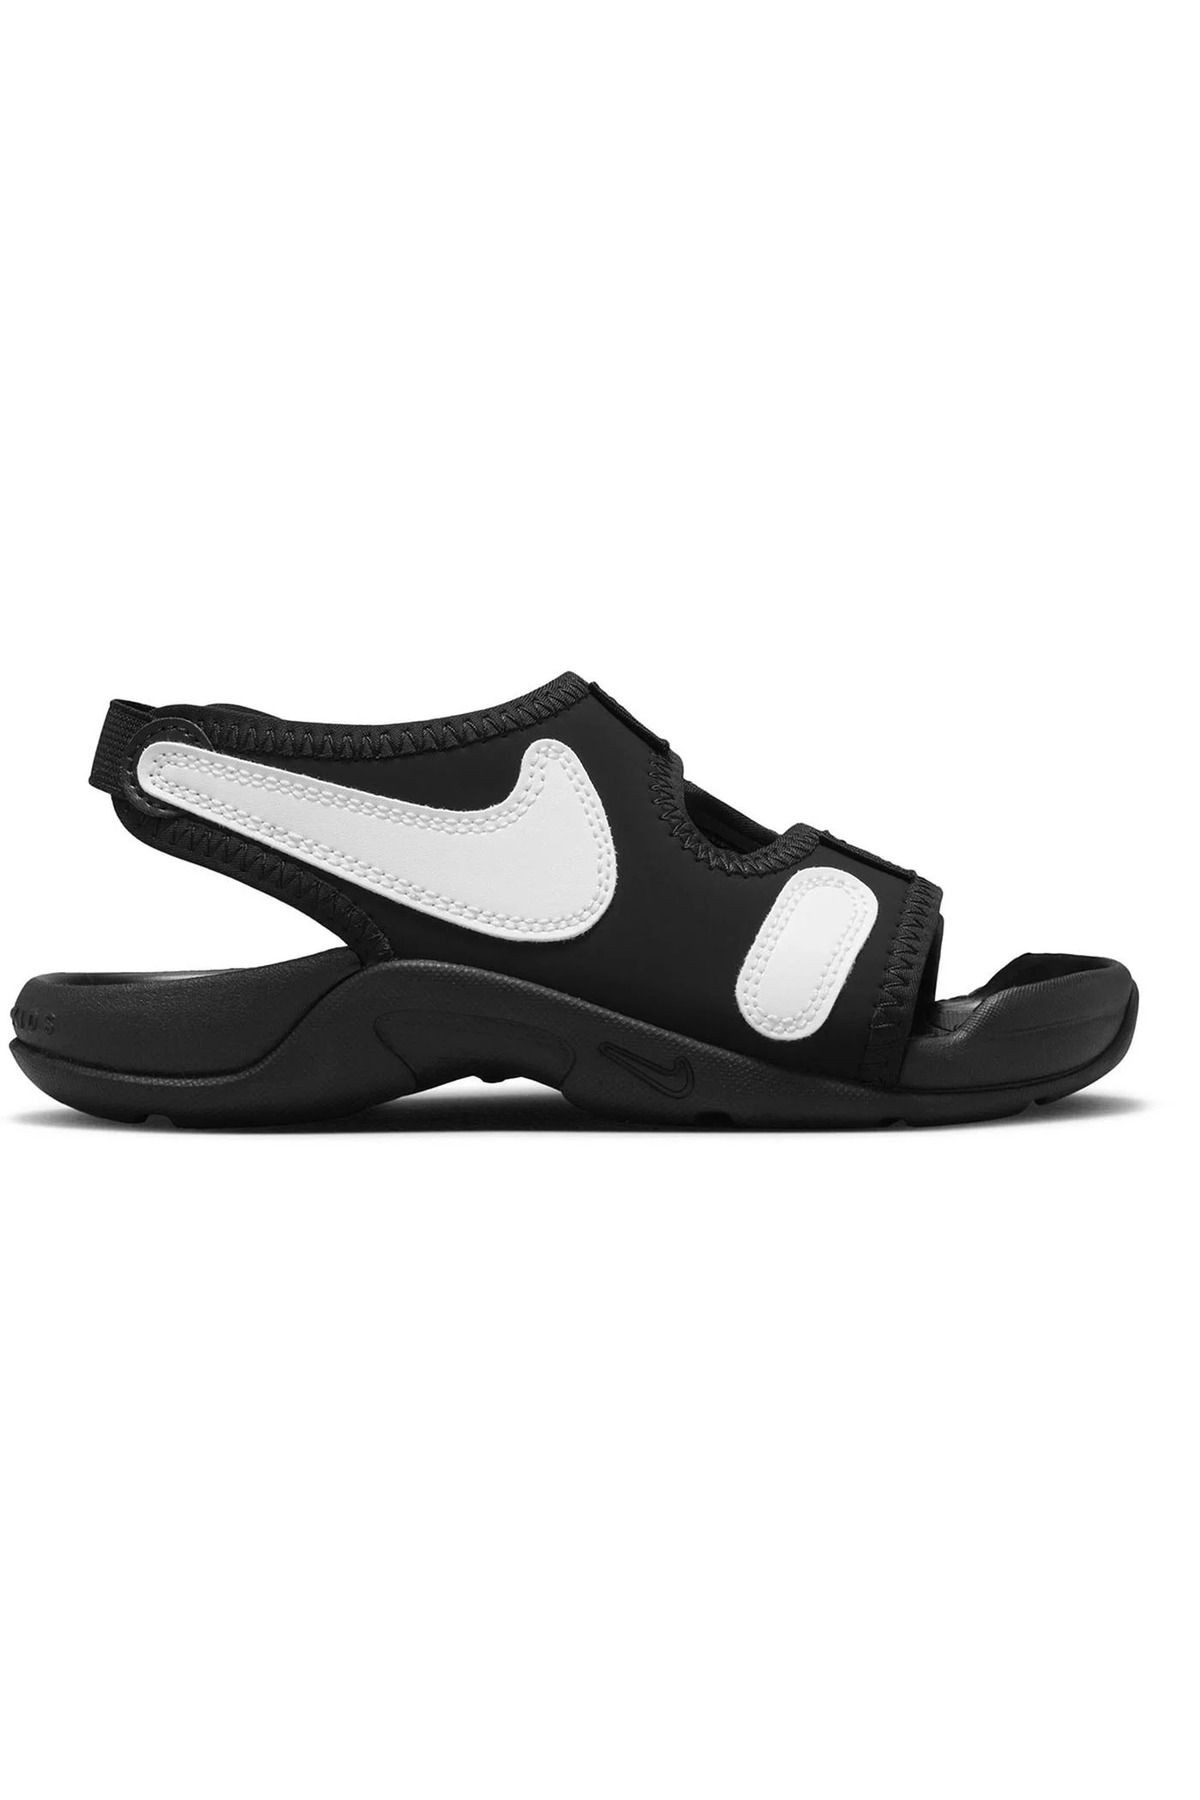 Nike Sunray Adjust 6 Çocuk Siyah Günlük Sandalet